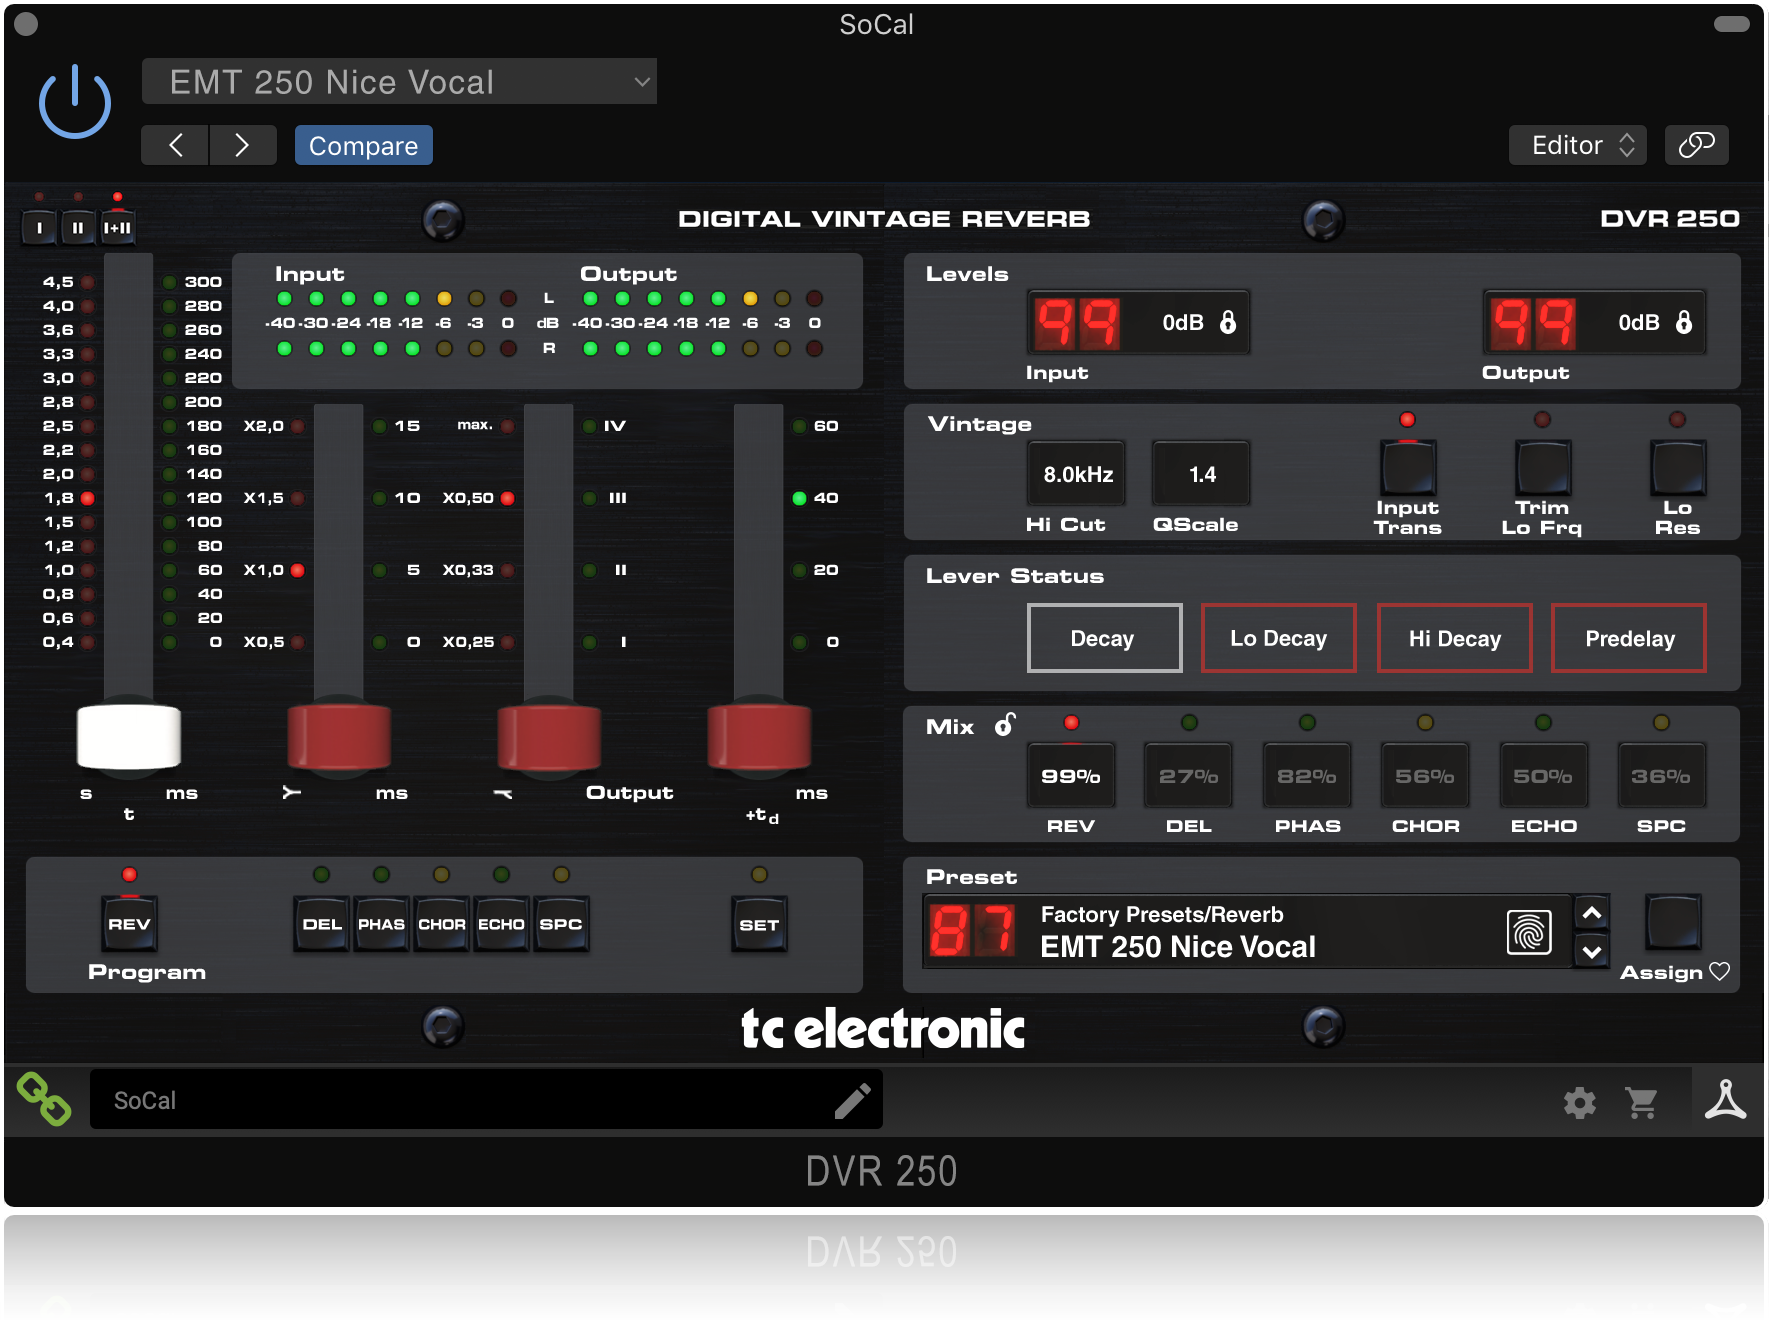 Review: TC Electronic DVR250-DT Digital Reverb